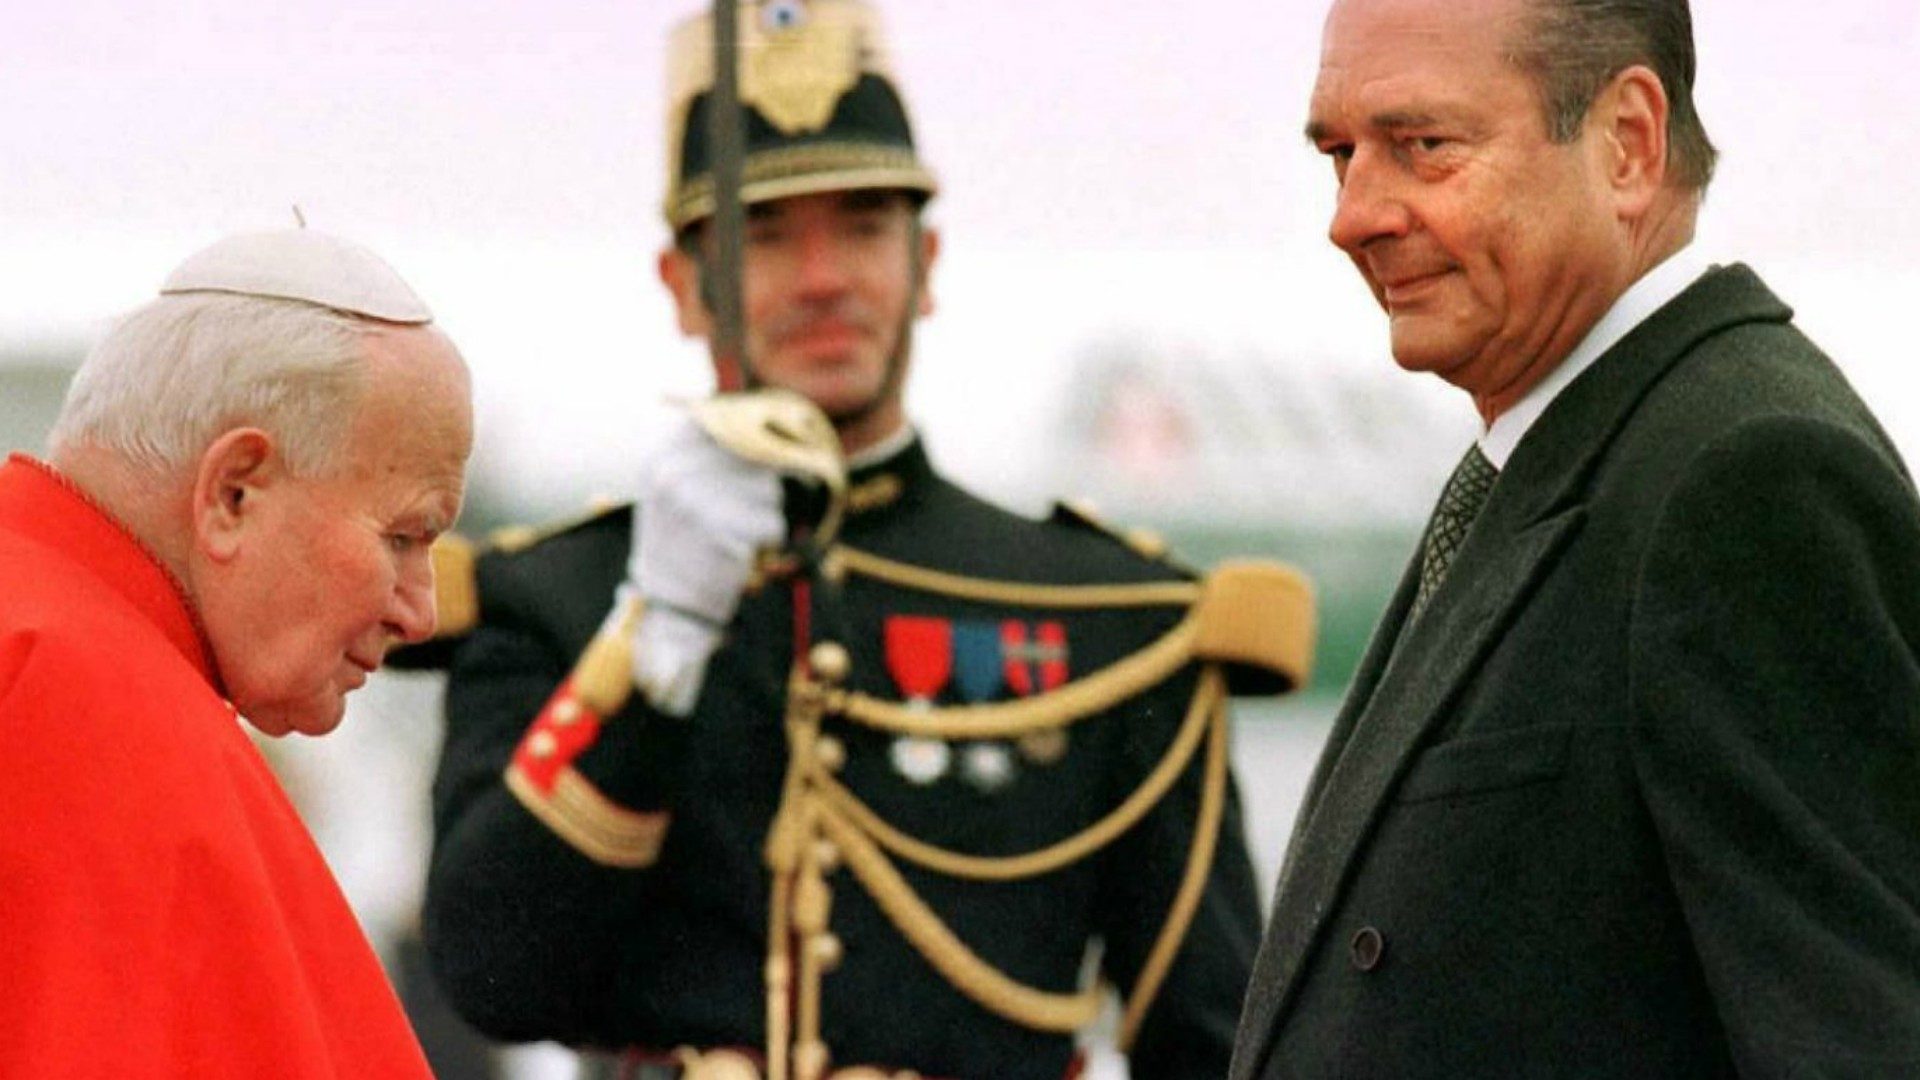 Le président Chirac accueillant le pape Jean Paul II à Tours en 1996 | © Vatican News 